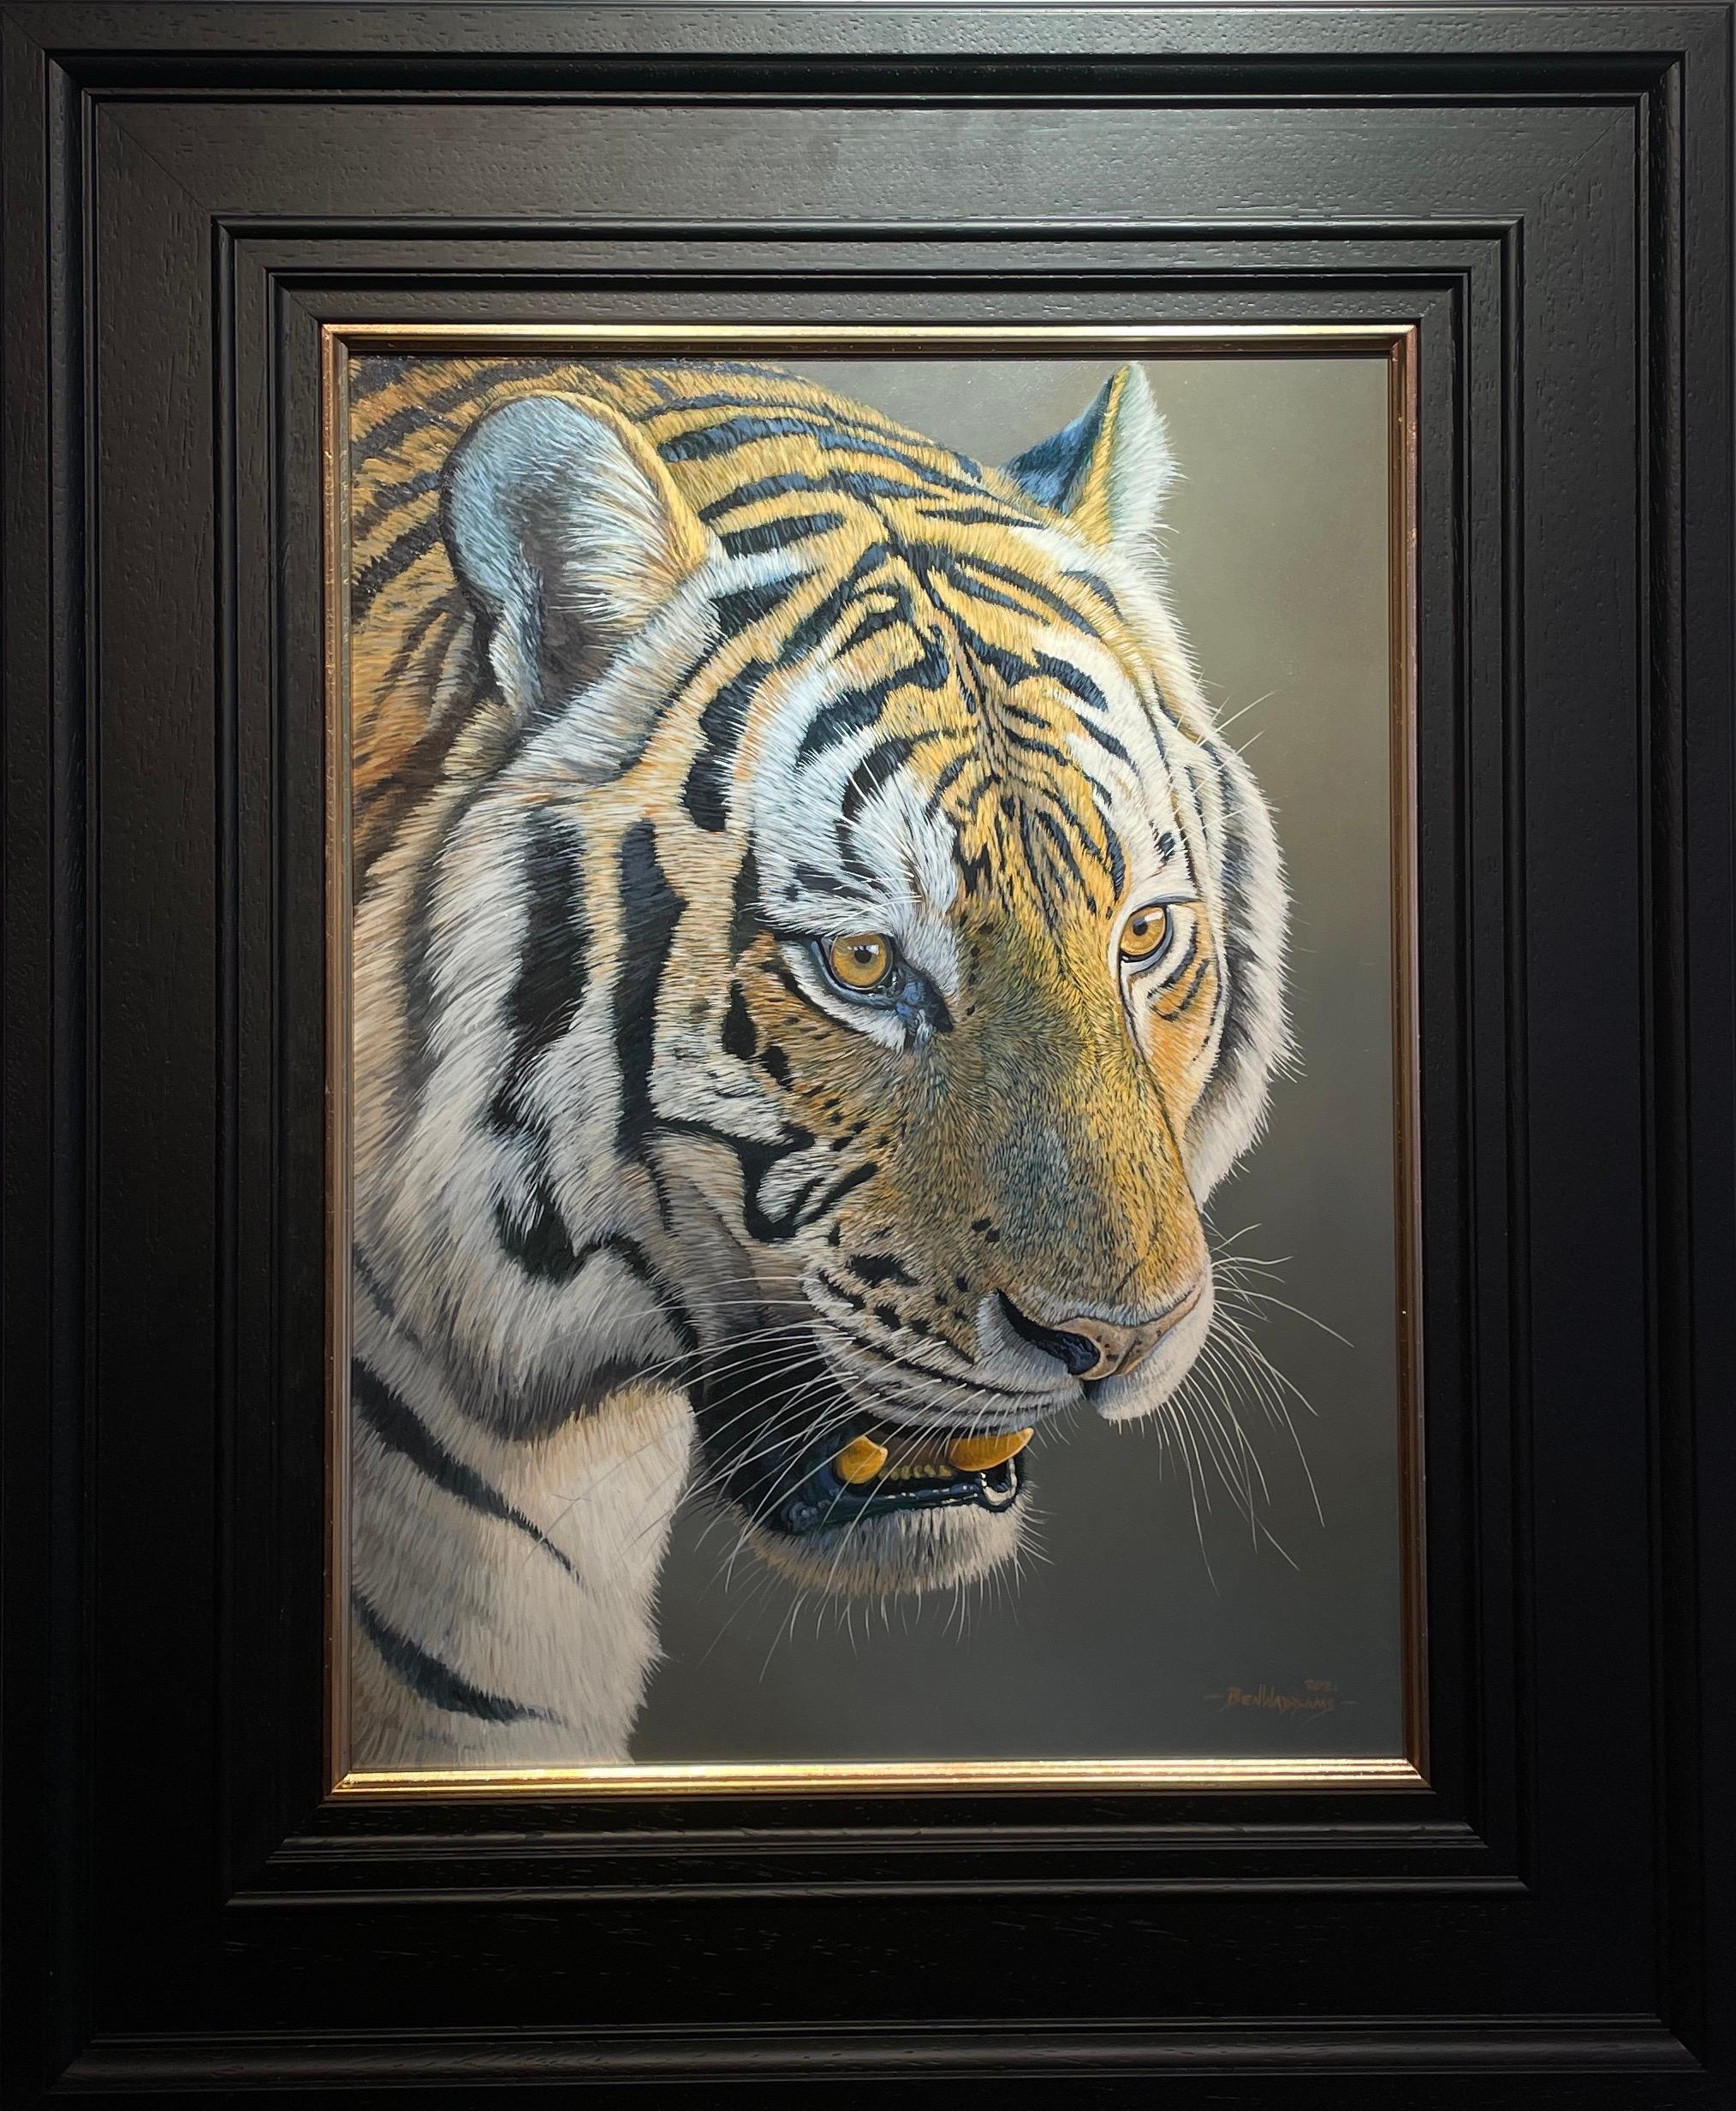 Ben Waddams Animal Painting – Fotorealistisches Gemälde eines Tigers, bereit zum Ausbreiten, in Orange, Grau und Schwarz